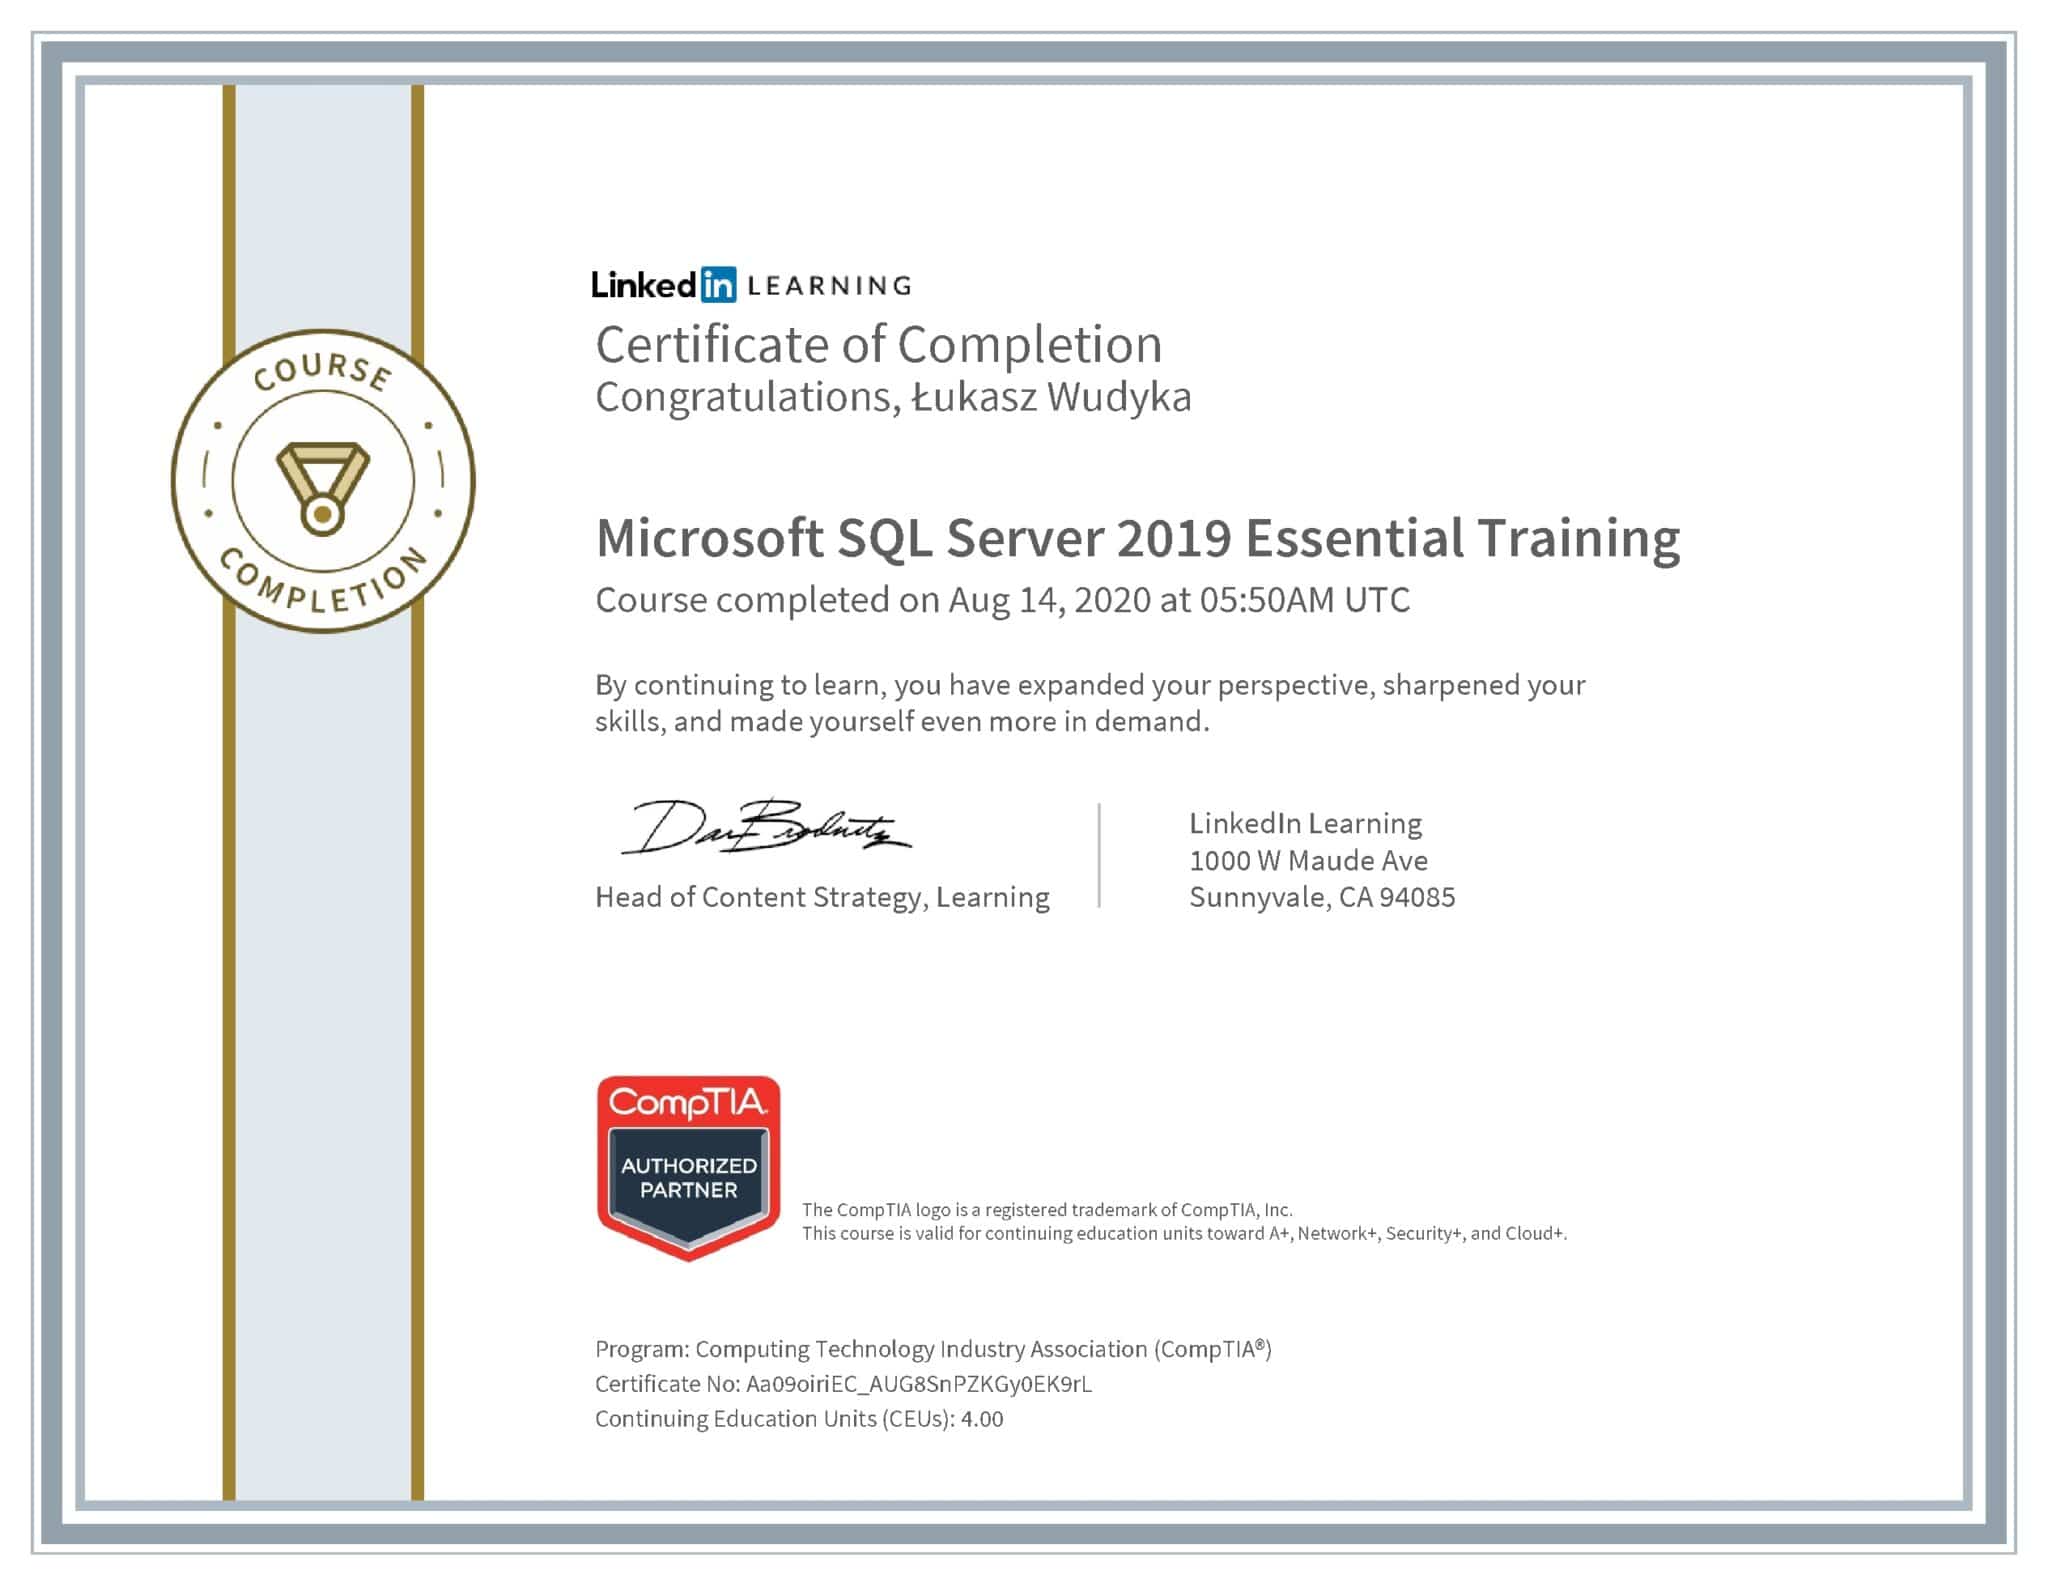 Łukasz Wudyka certyfikat LinkedIn Microsoft SQL Server 2019 Essential Training CompTIA